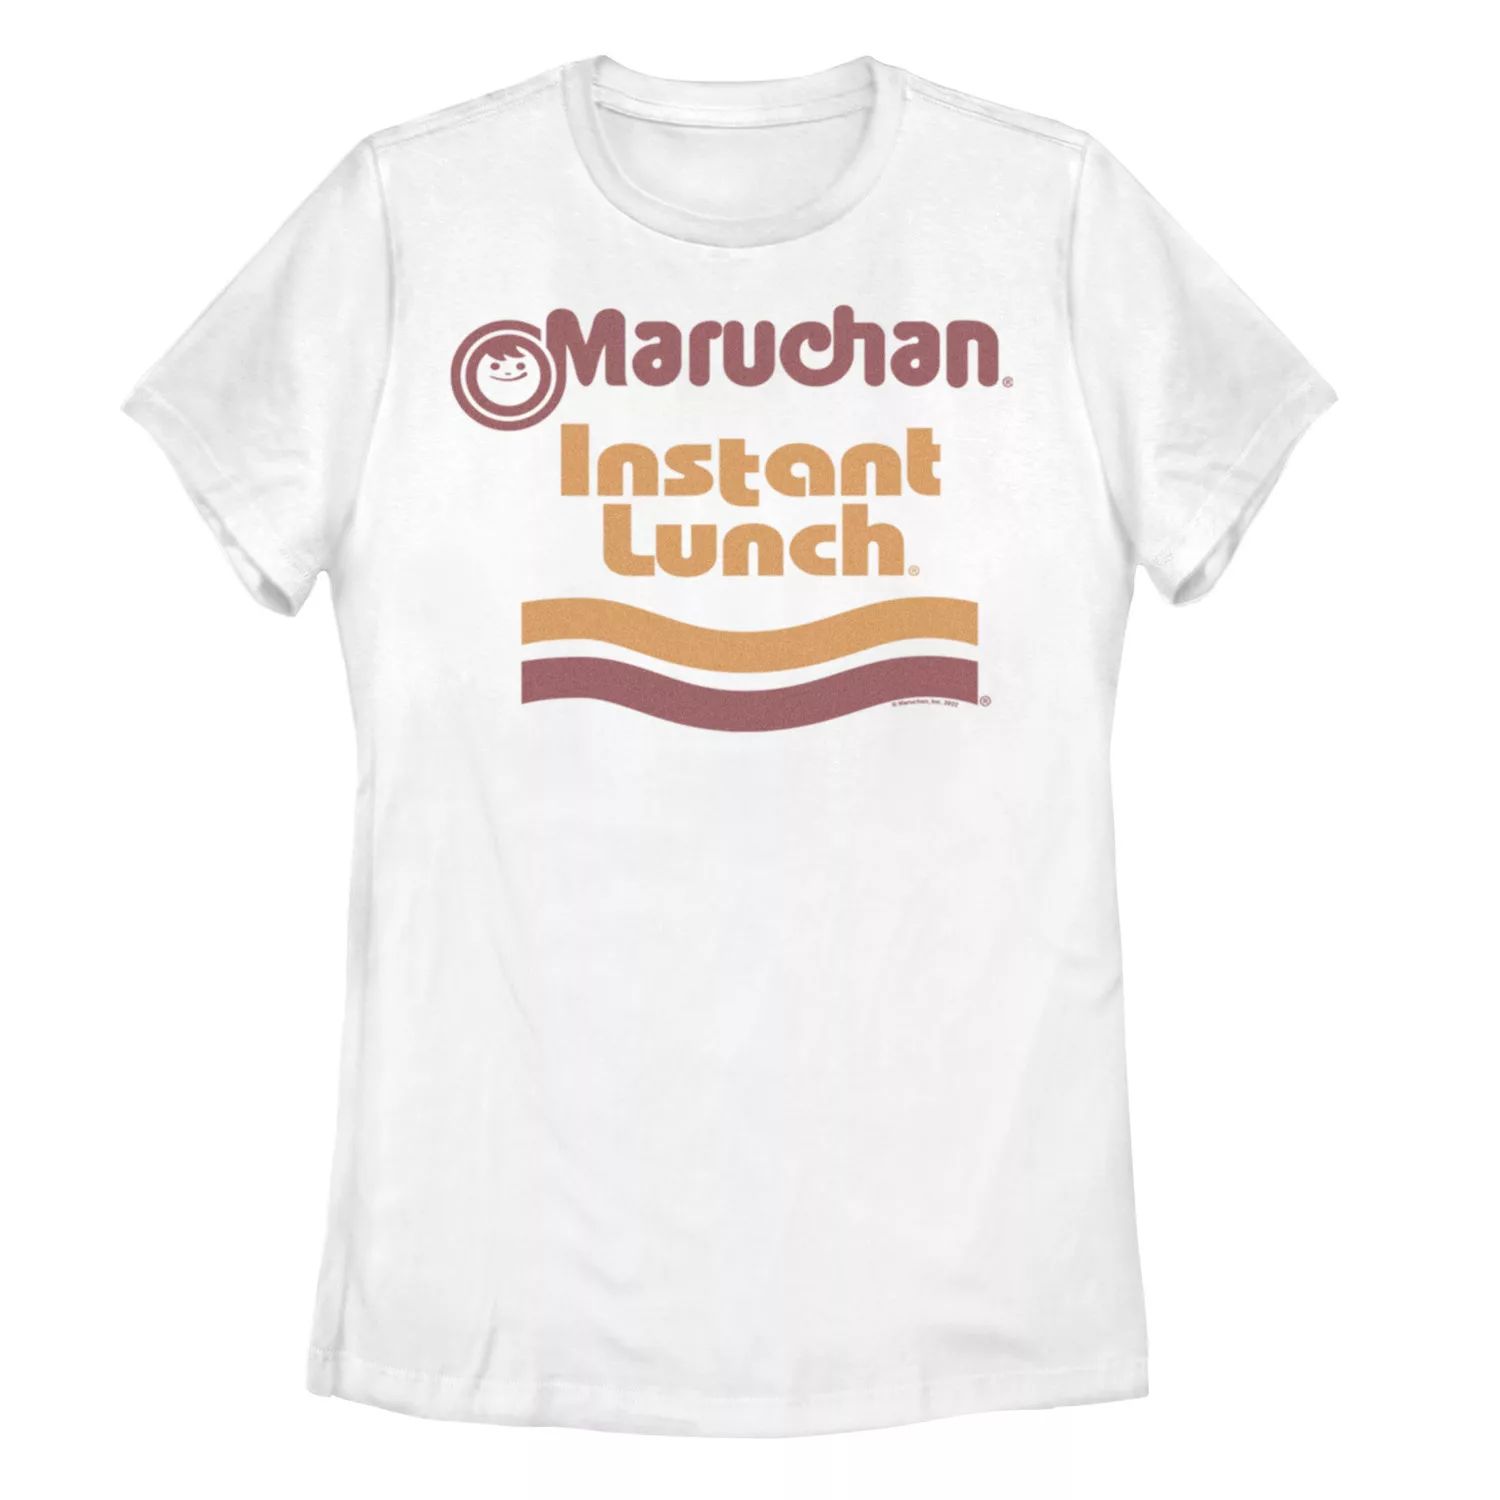 Детская футболка Maruchan с графическим логотипом «Instant Lunch» Licensed Character